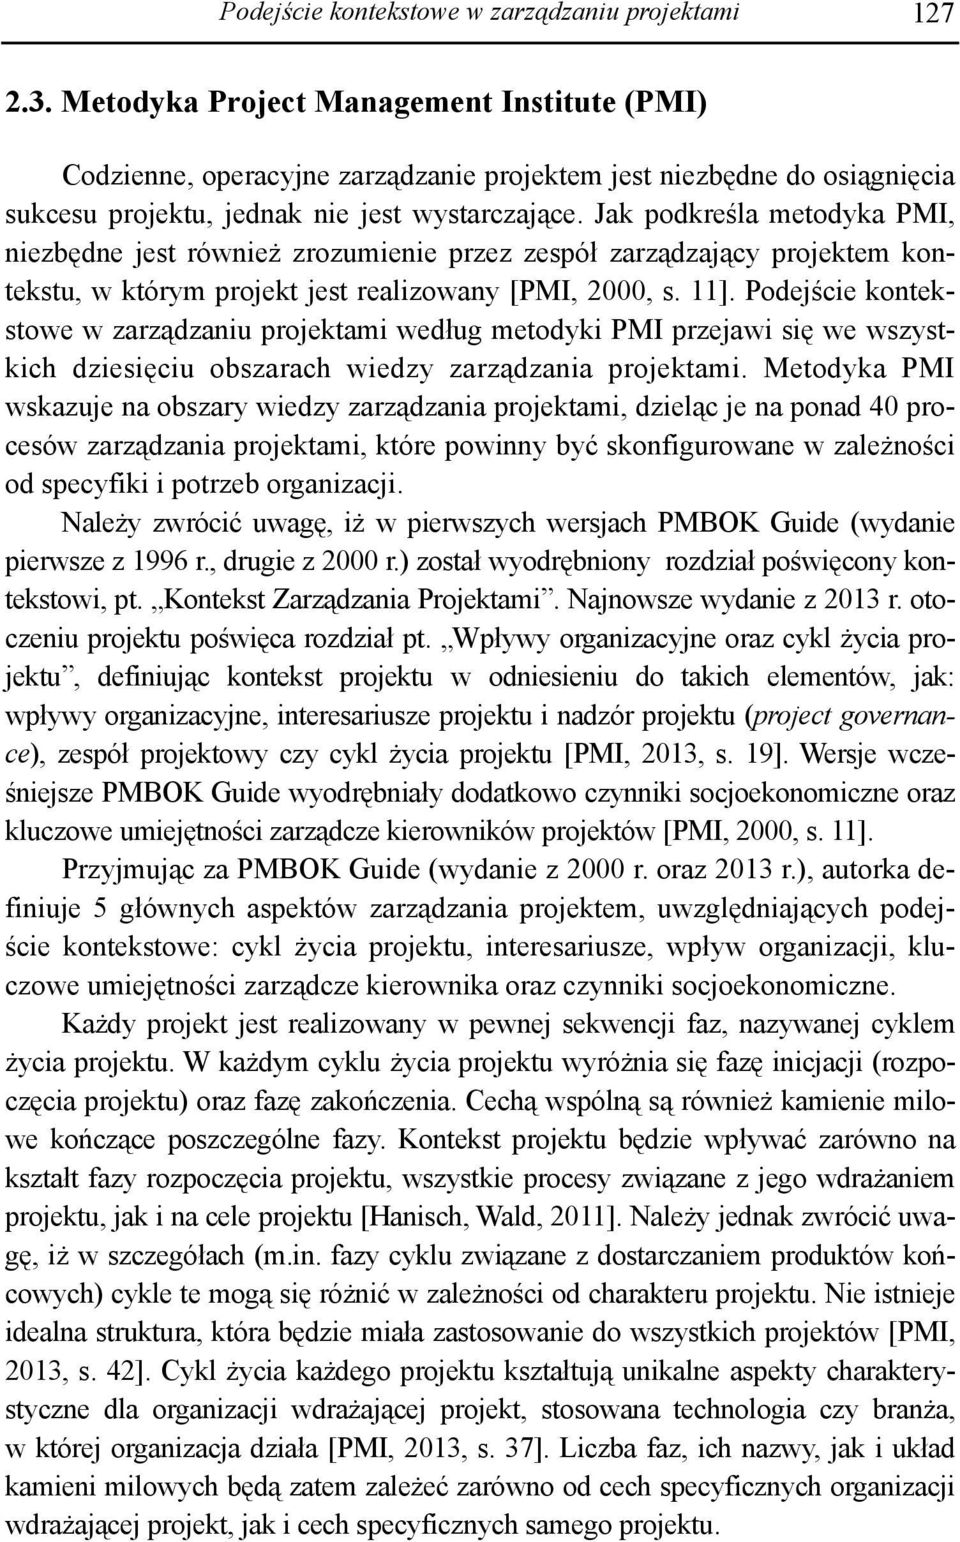 Jak podkreśla metodyka PMI, niezbędne jest również zrozumienie przez zespół zarządzający projektem kontekstu, w którym projekt jest realizowany [PMI, 2000, s. 11].